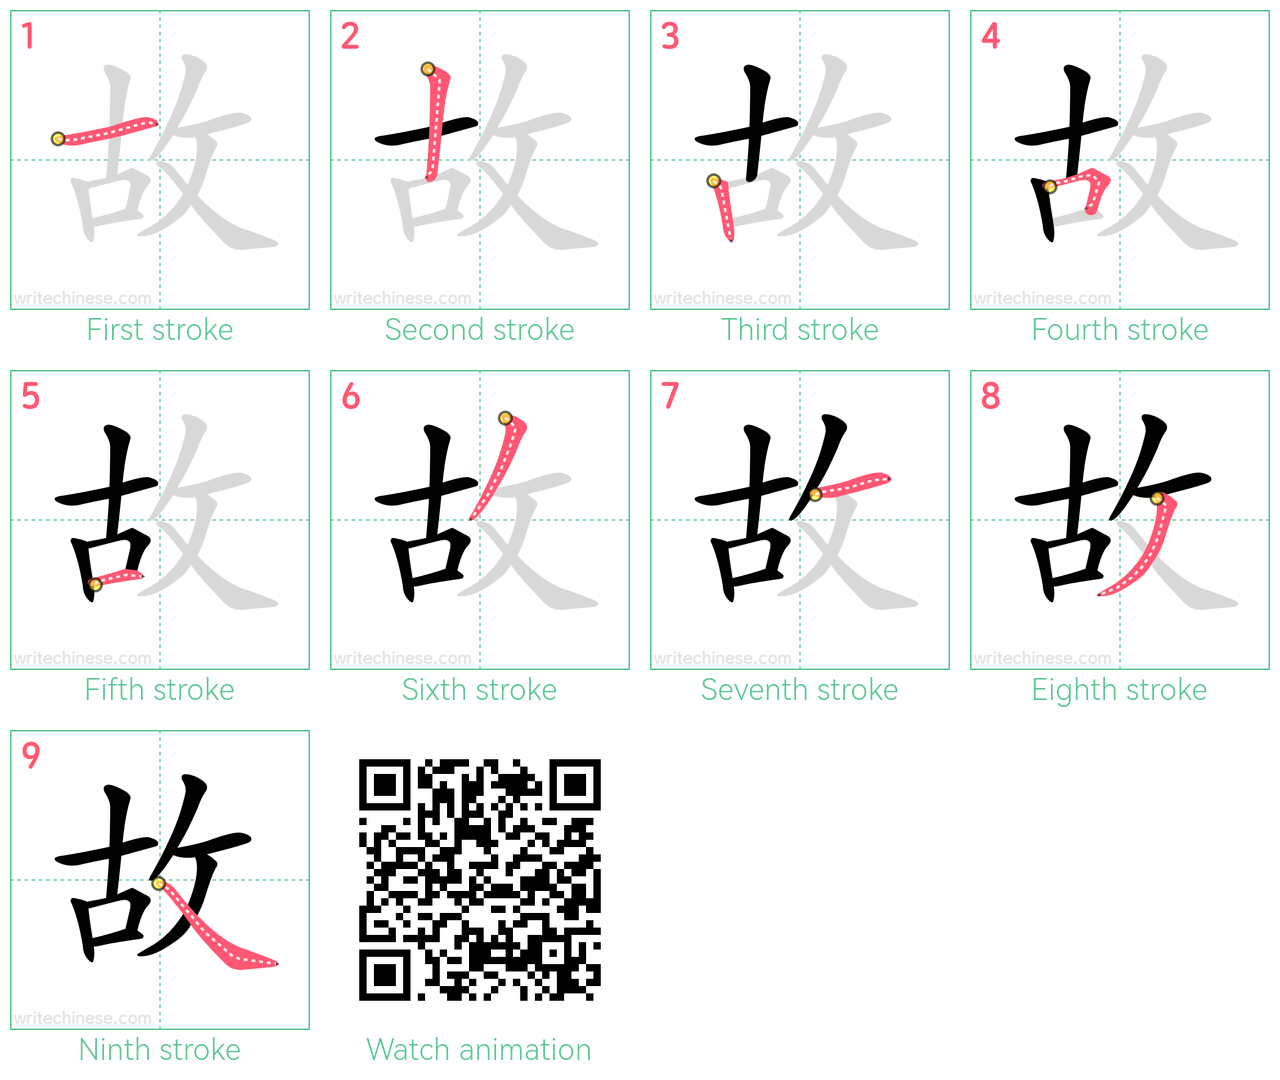 故 step-by-step stroke order diagrams